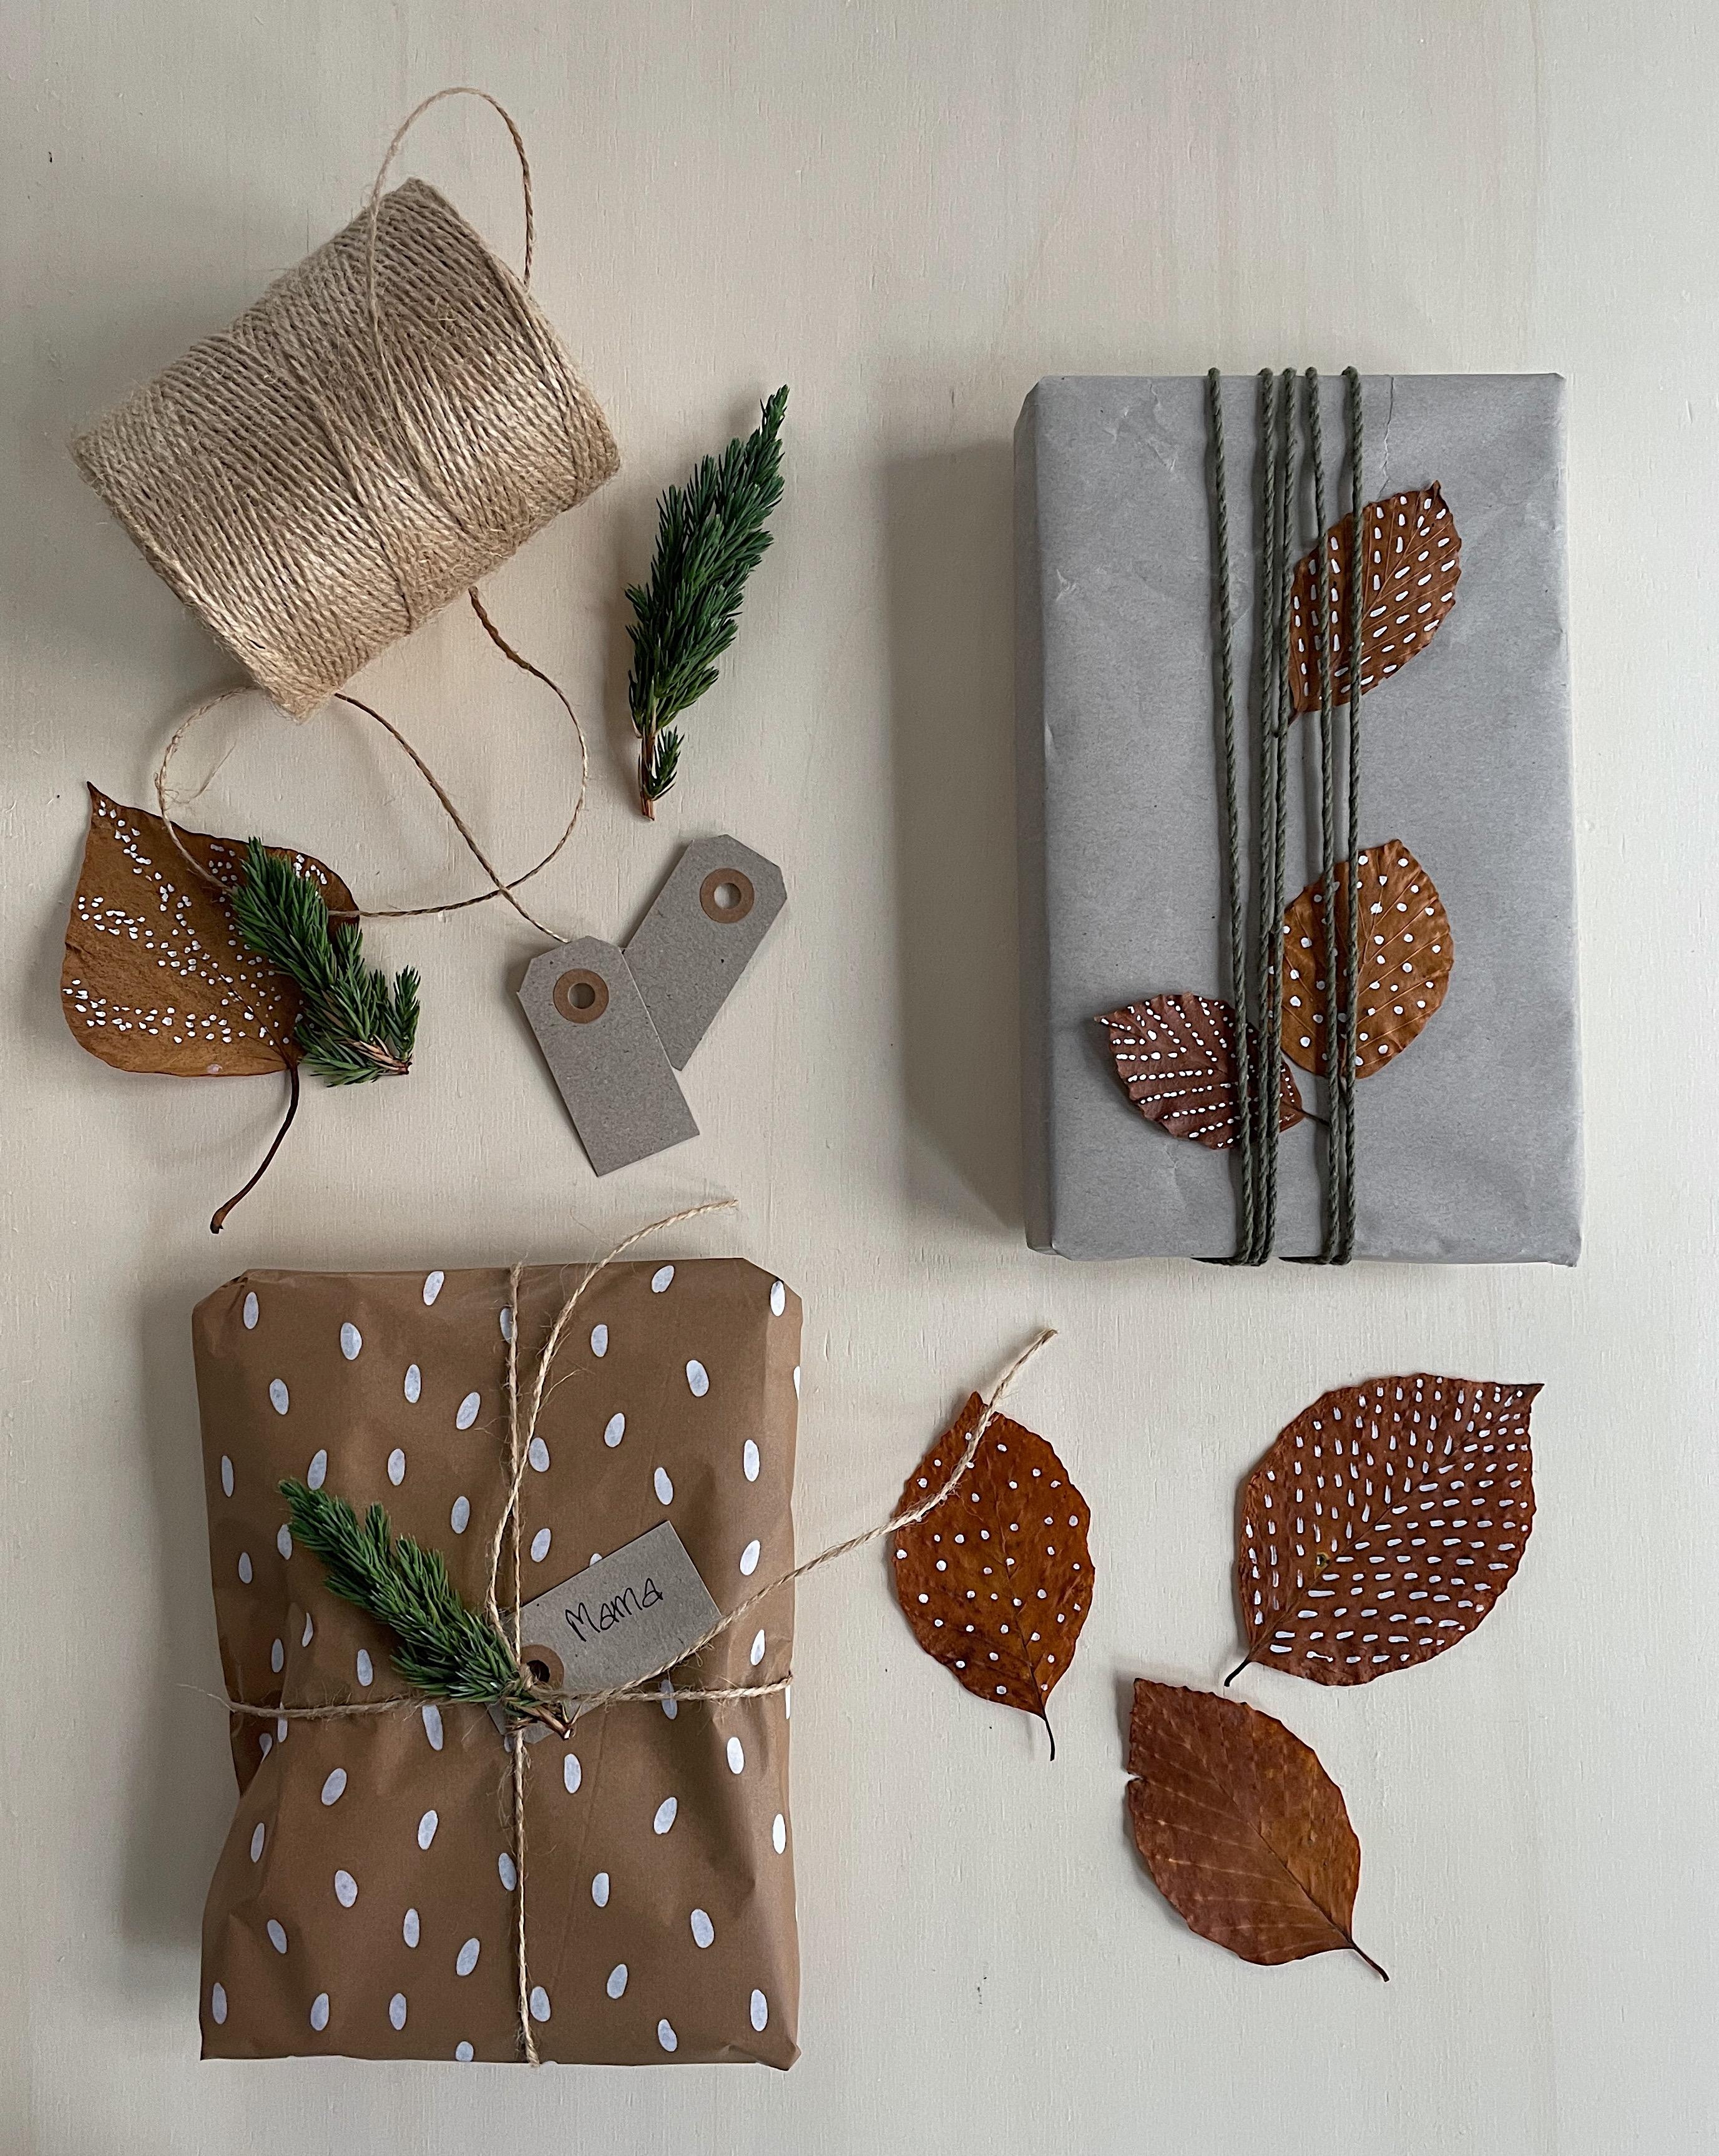 Geschenke verpacken einfach & natürlich #diy #weihnachtsgeschenke #giftwrapping